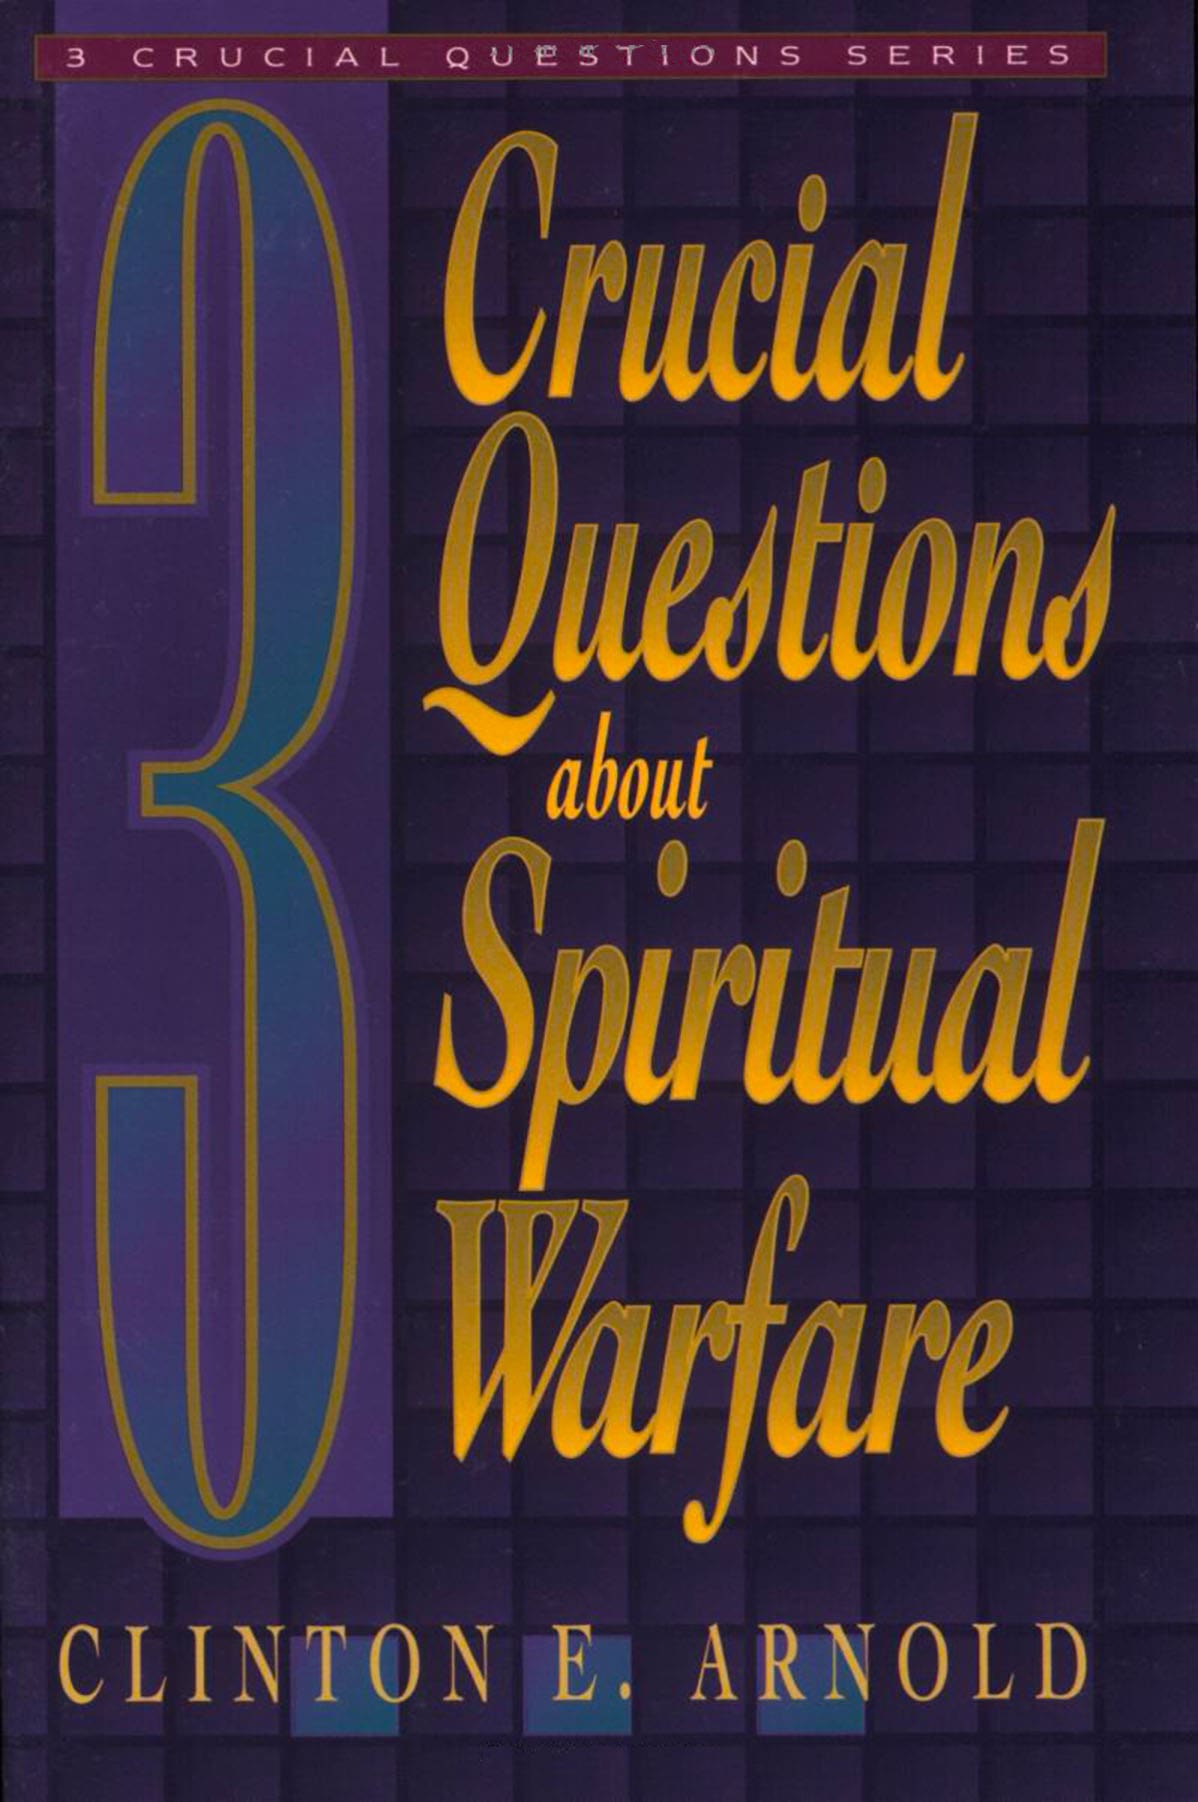 3-spiritual-warfare